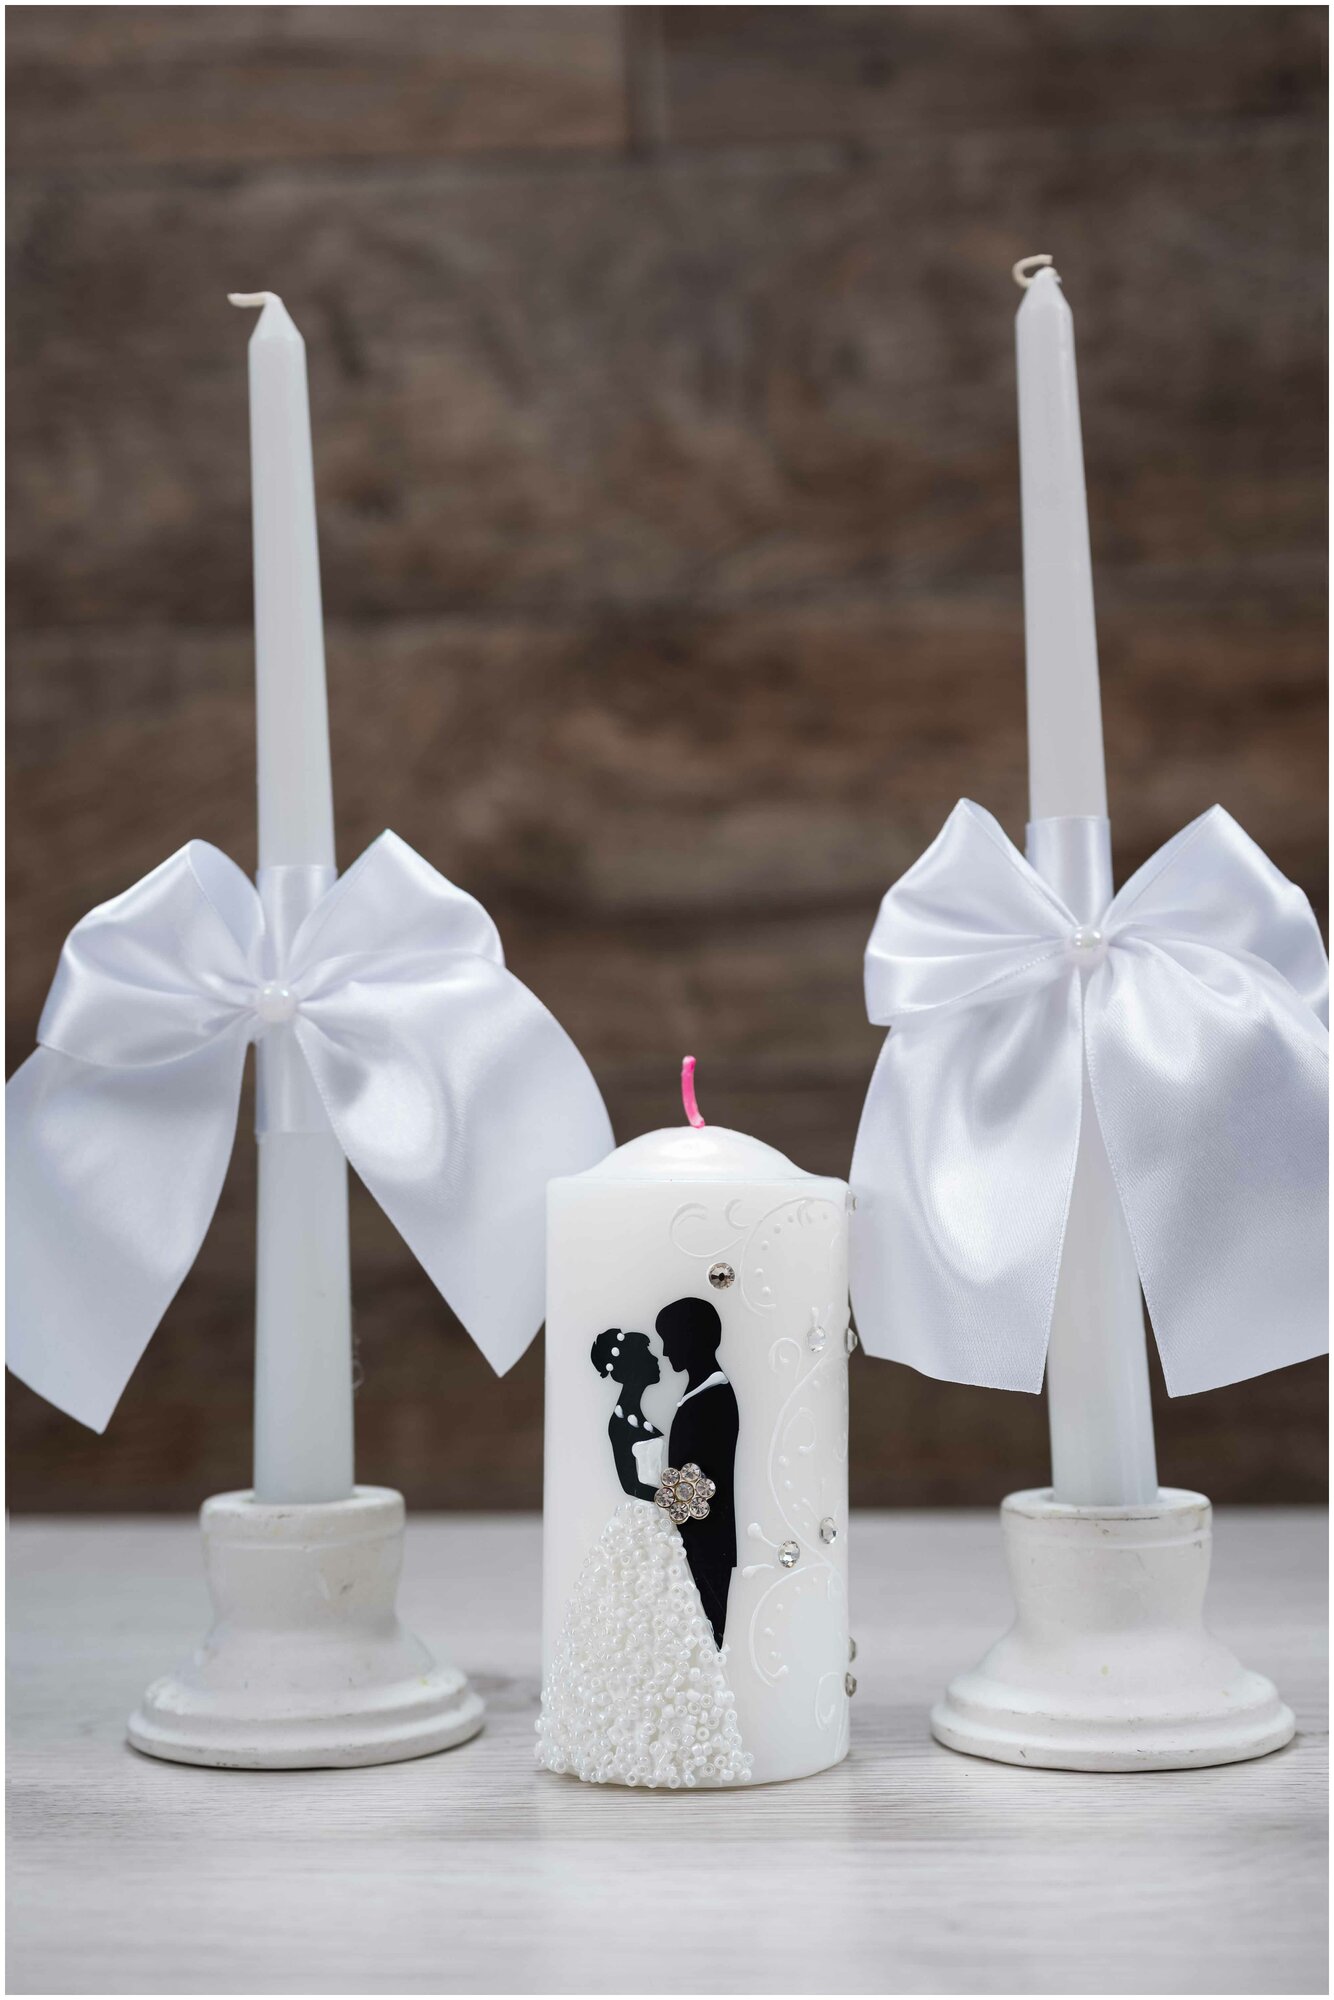 Свечи "Домашний очаг", свадебный набор - "Силуэты" в белом цвете (бисер)